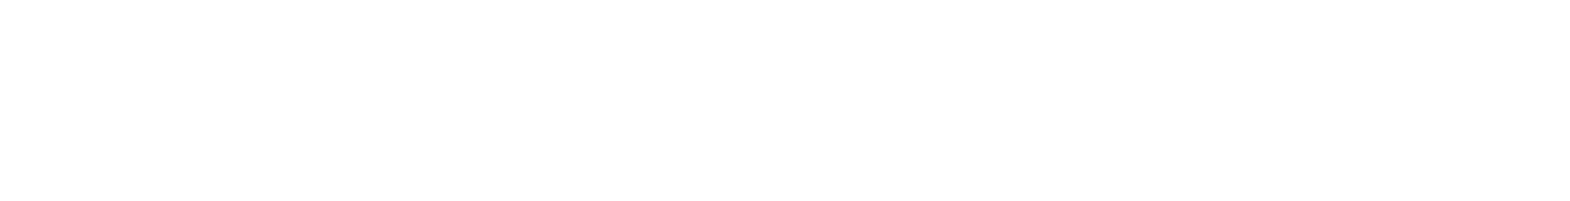 Pkp Cargo logo large for dark backgrounds (transparent PNG)